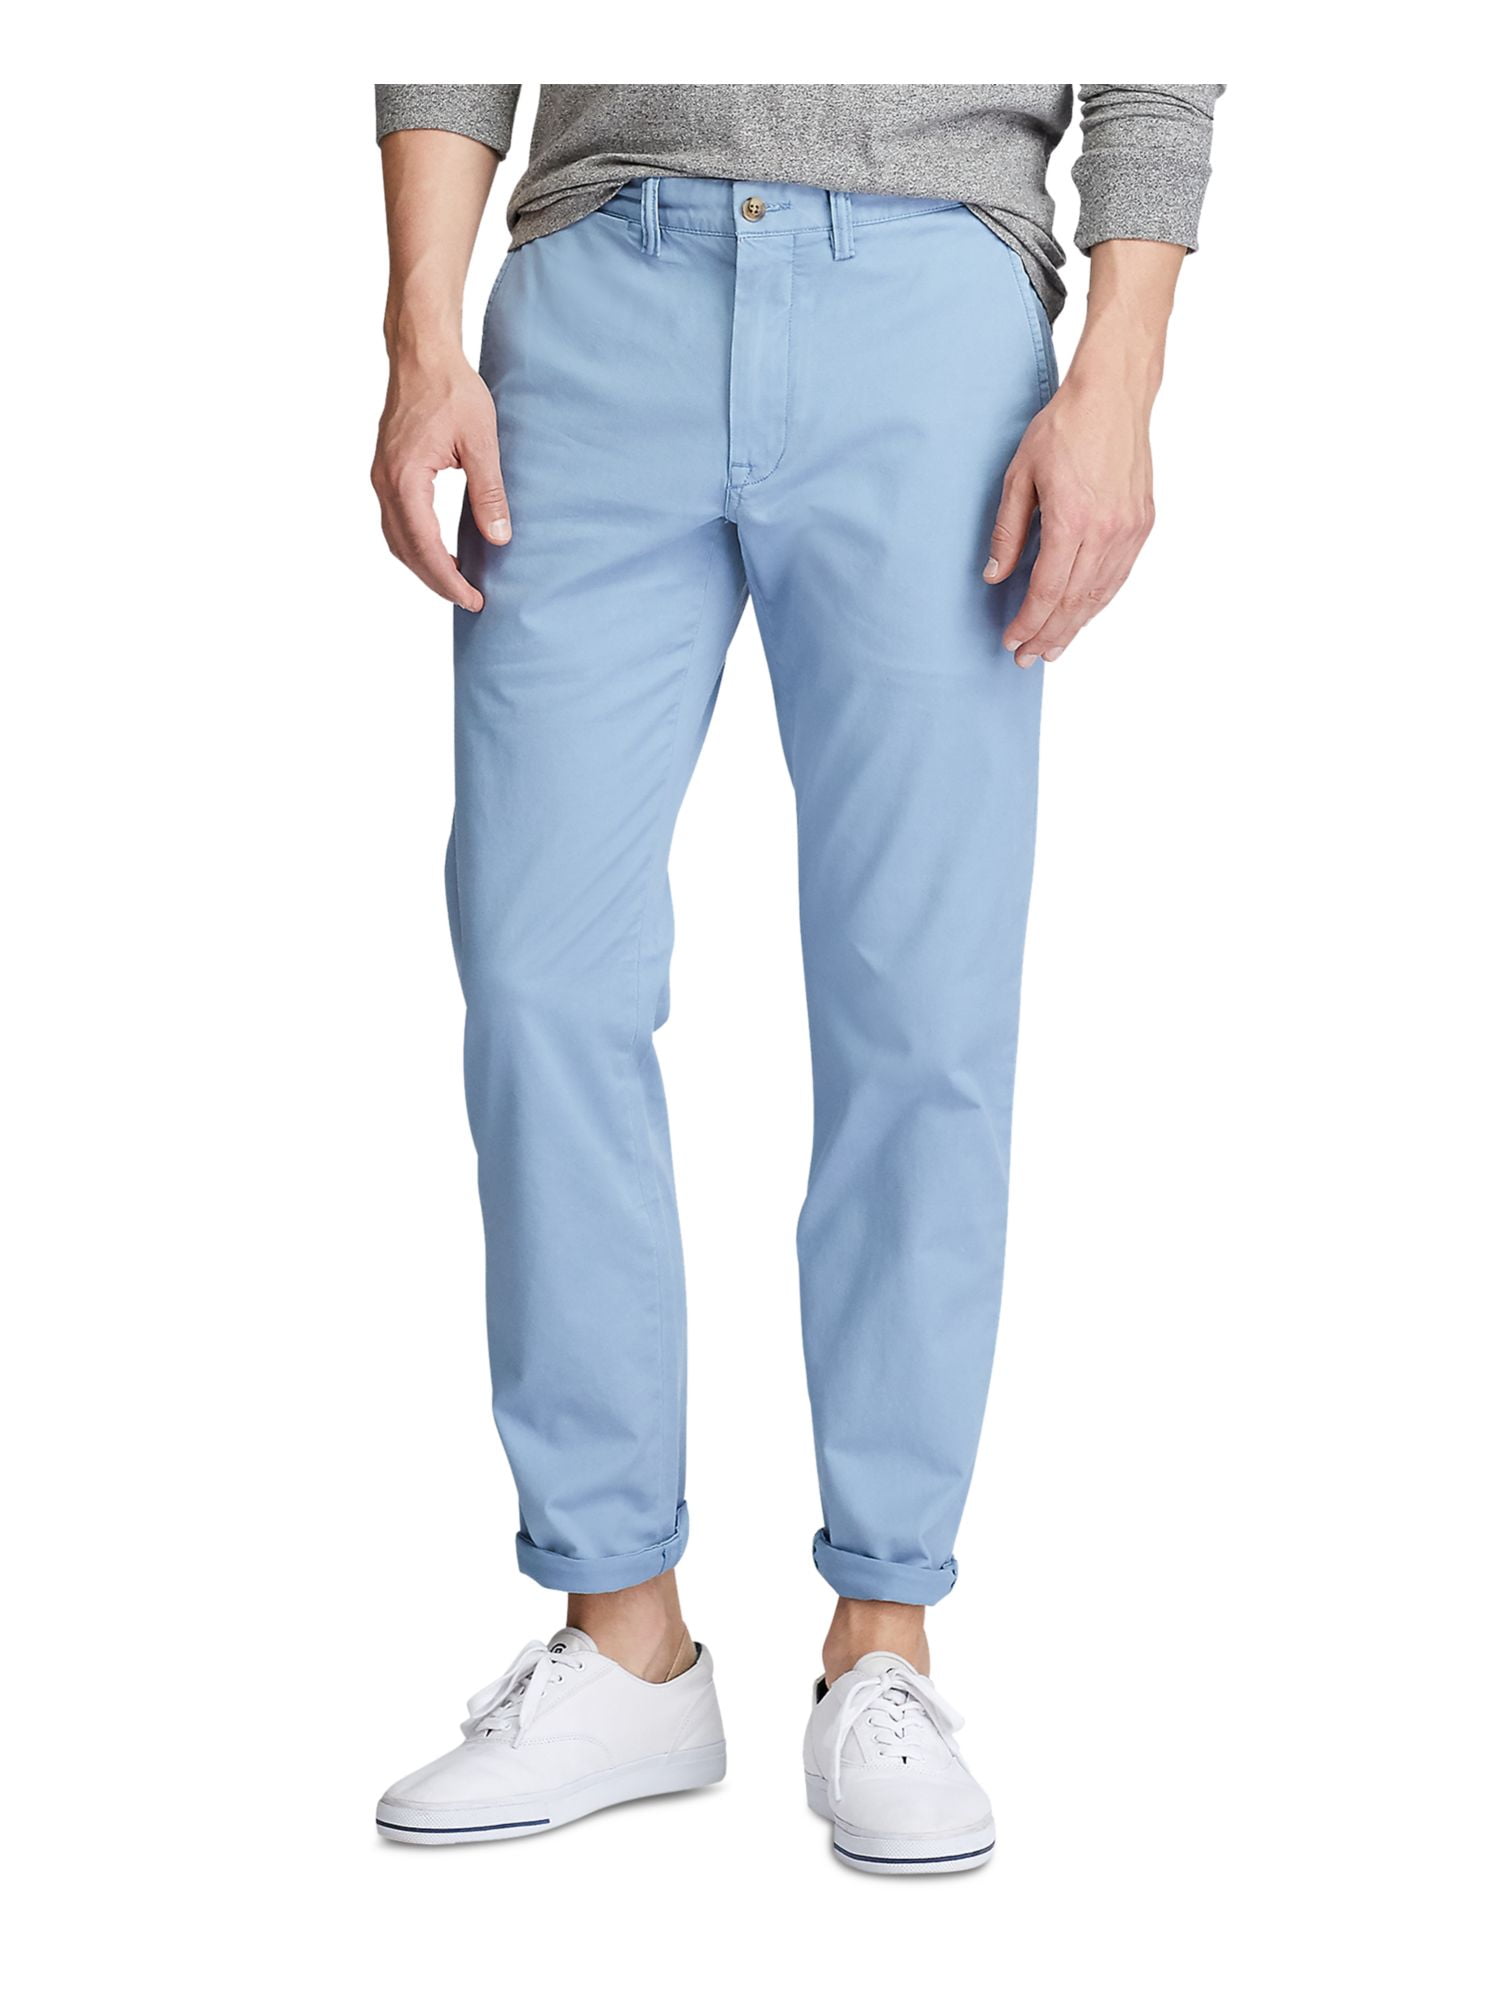 Blue Chino & Khaki Pants for Men | Nordstrom Rack